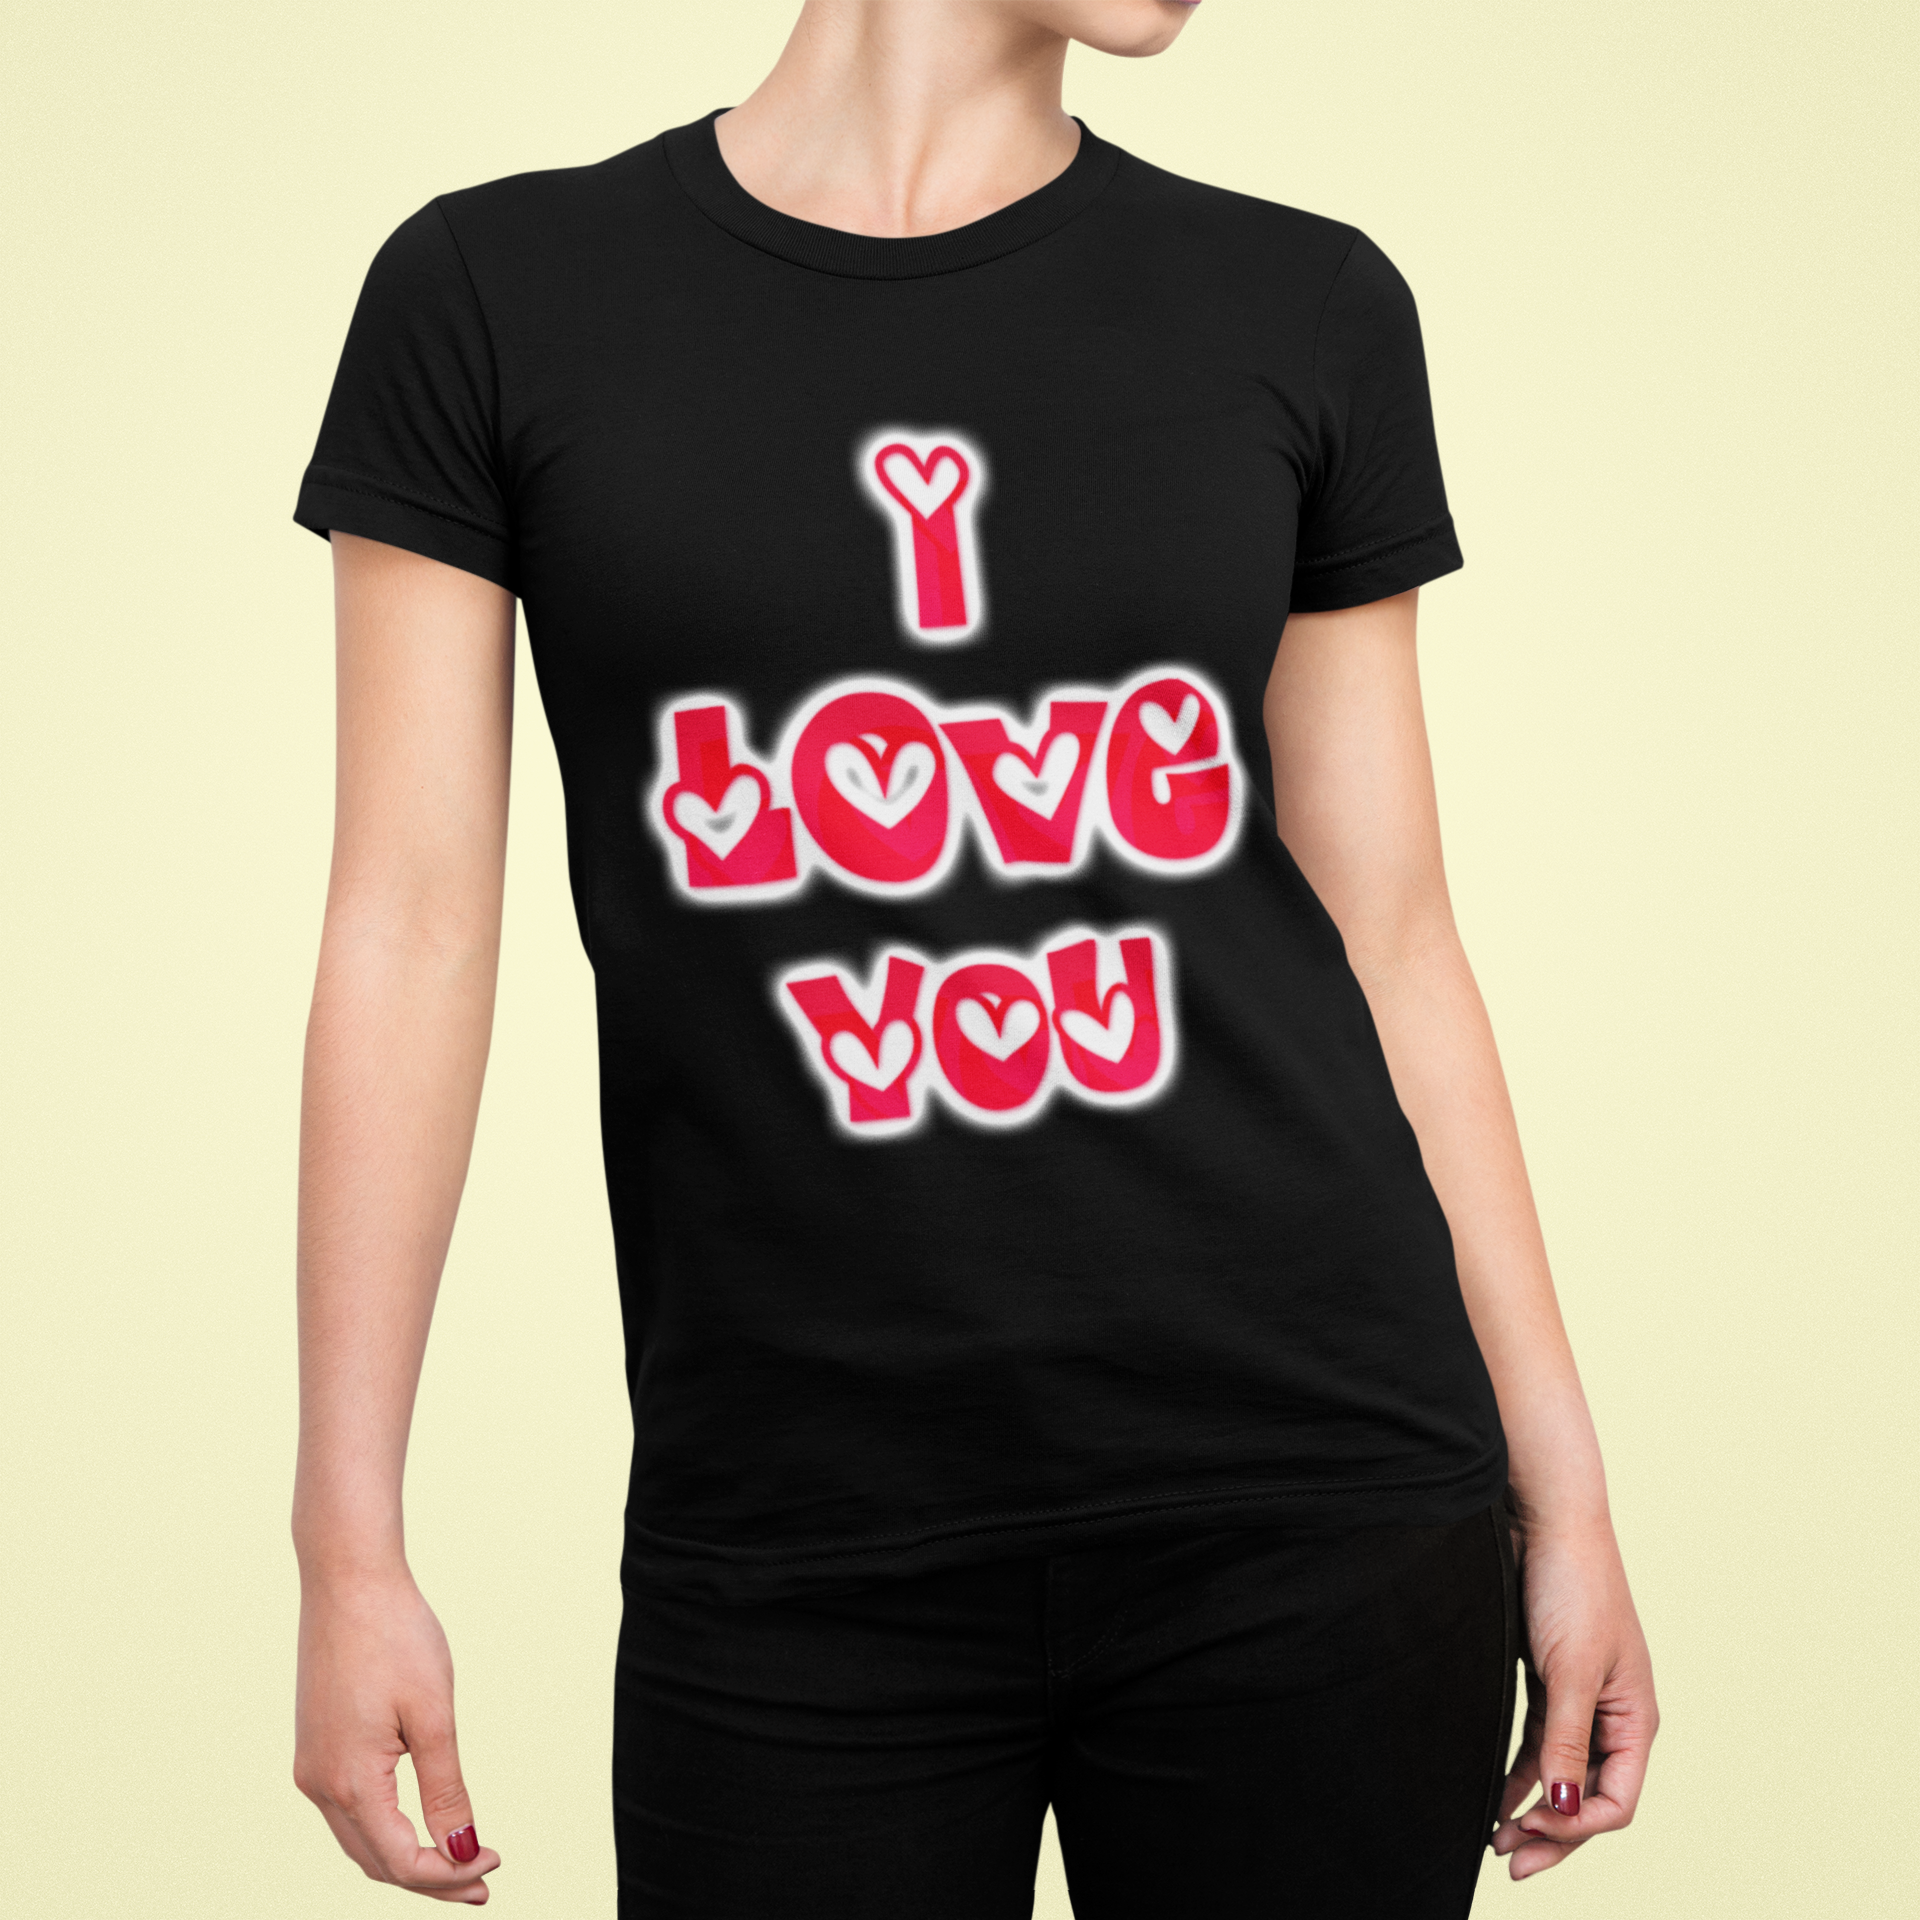 Women's T-shirt (I love you)